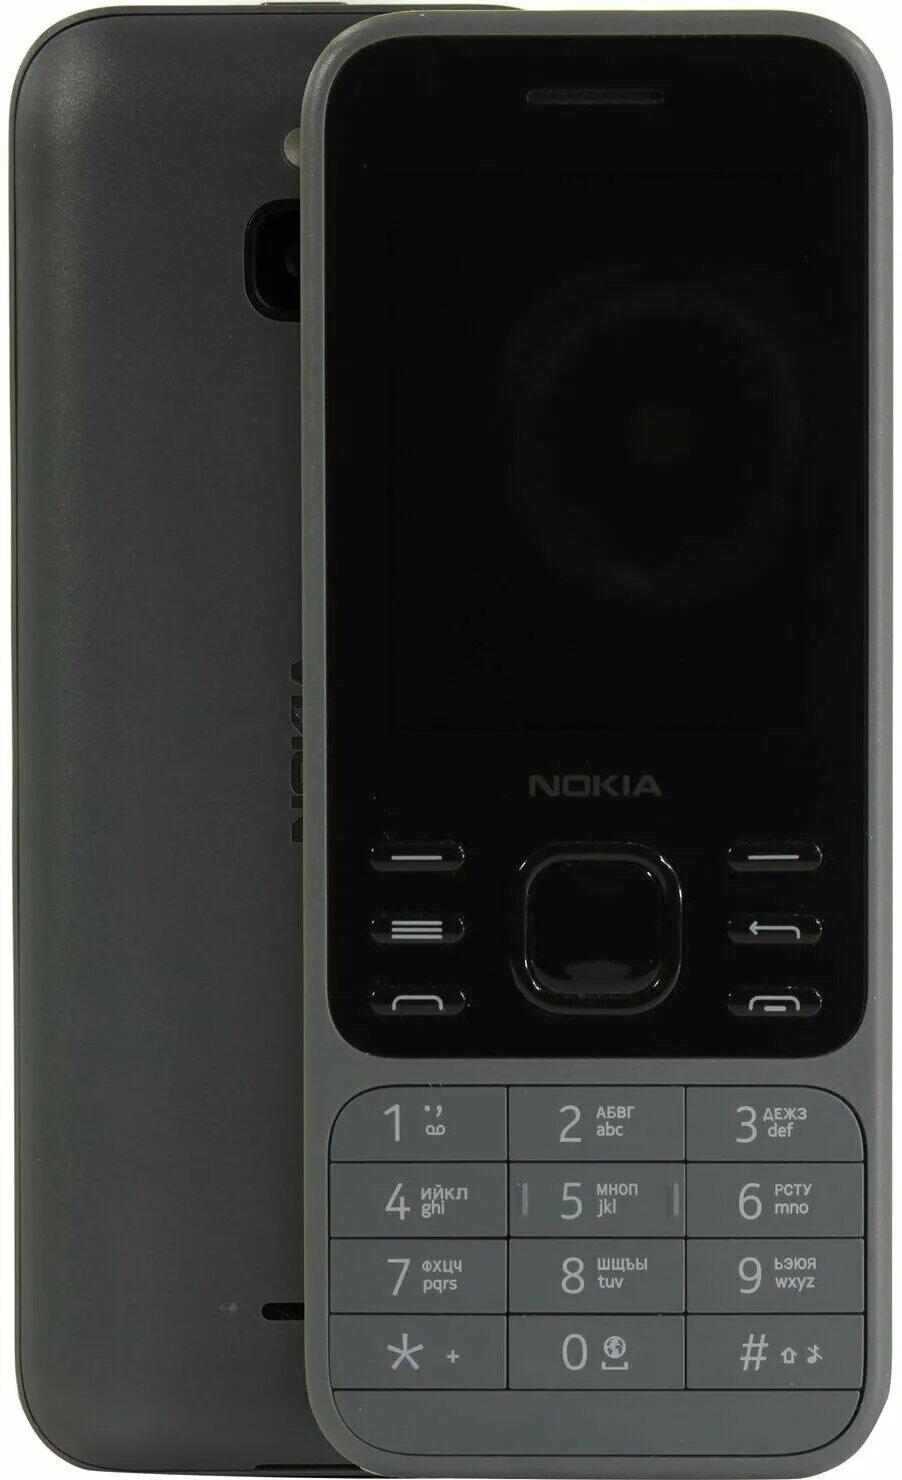 6300 4g купить. Nokia 6300 4g Charcoal. Nokia 6300 4g DS Charcoal. Nokia 6300 4g DS (ta-1294) Charcoal. Nokia 6300 4g (ta-1294) White.